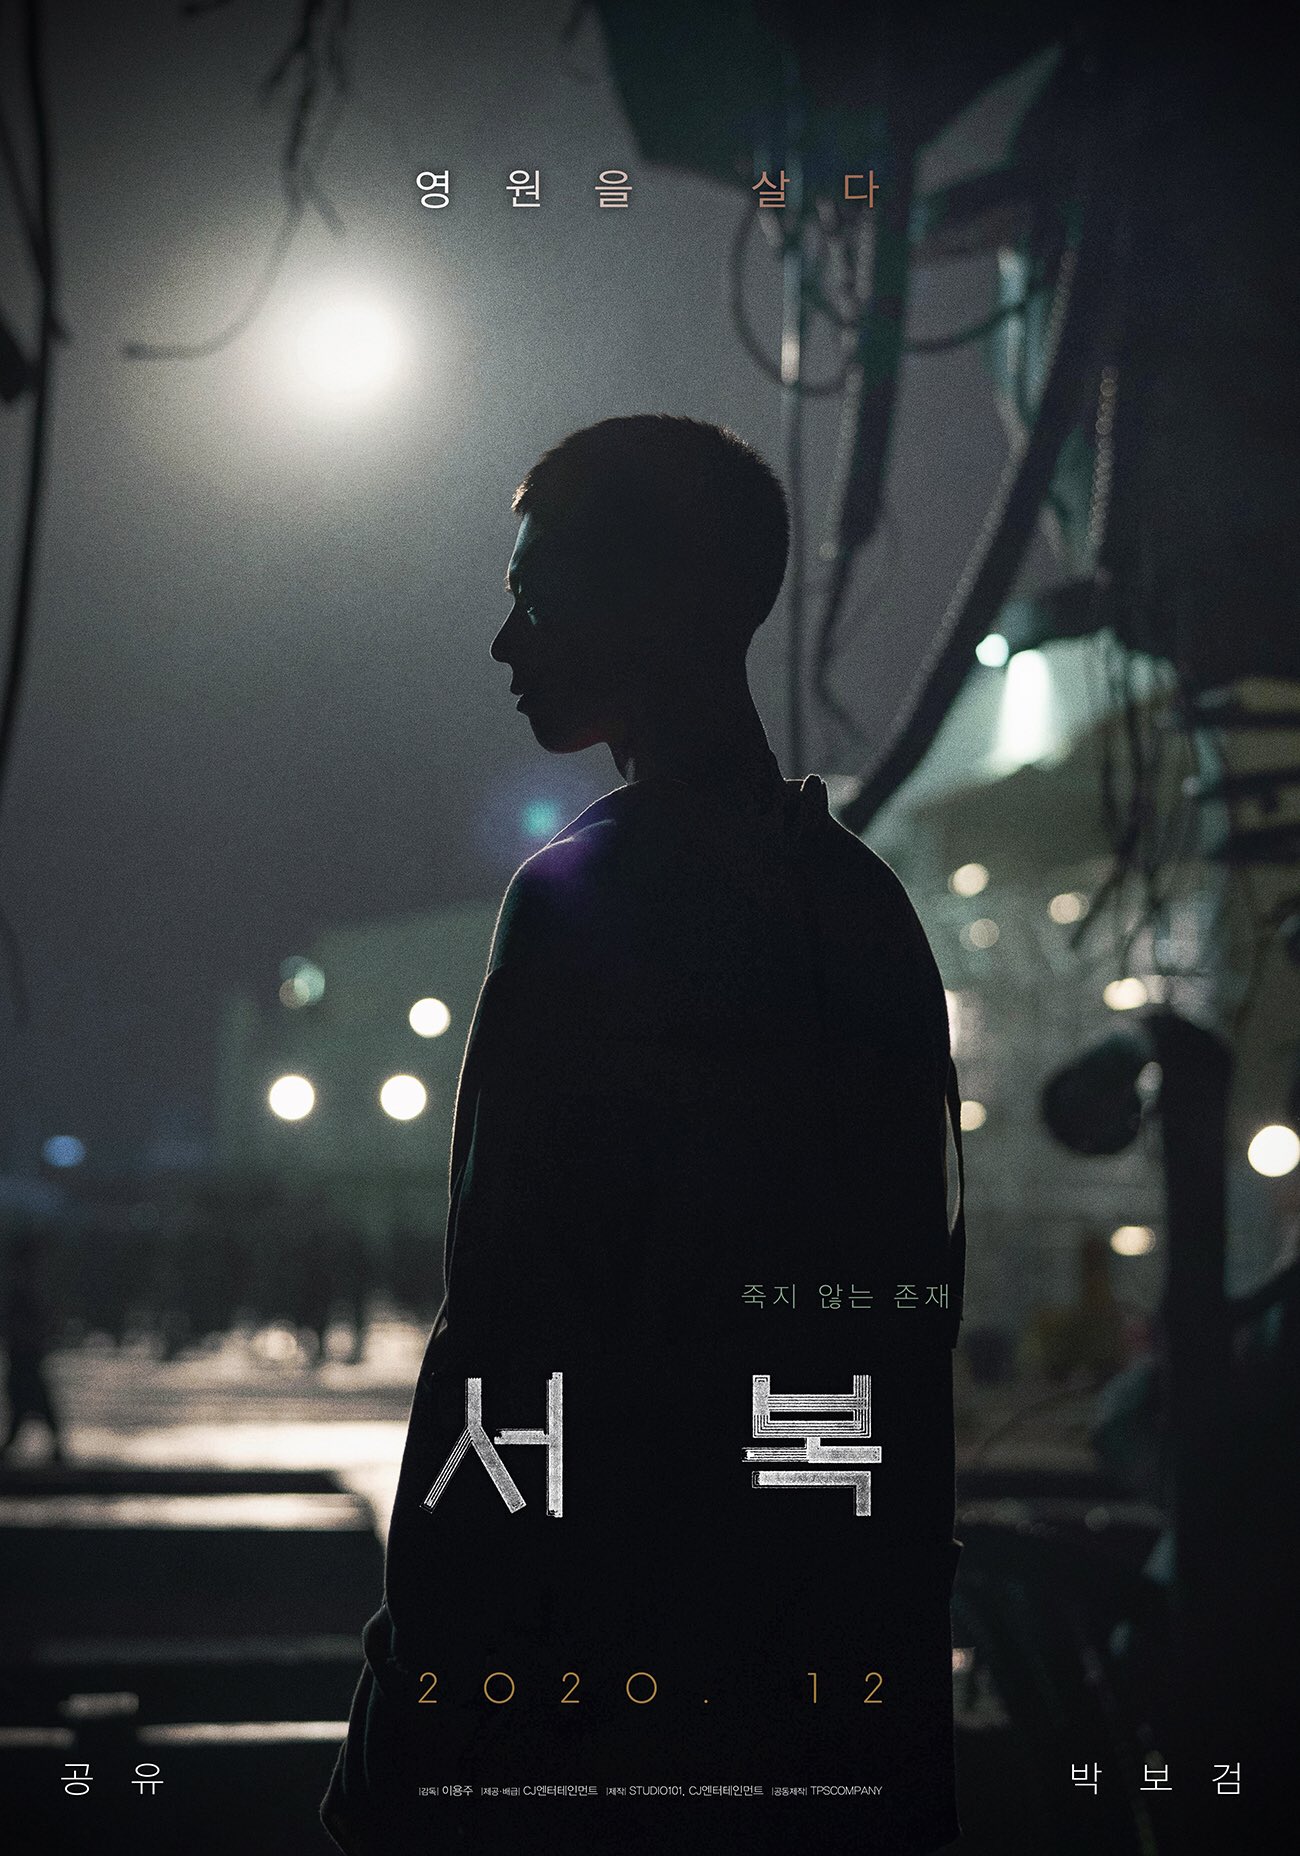 [정보/소식] 드디어 극장개봉하는 공유,박보검 주연 영화 "서복" 소개 | 인스티즈